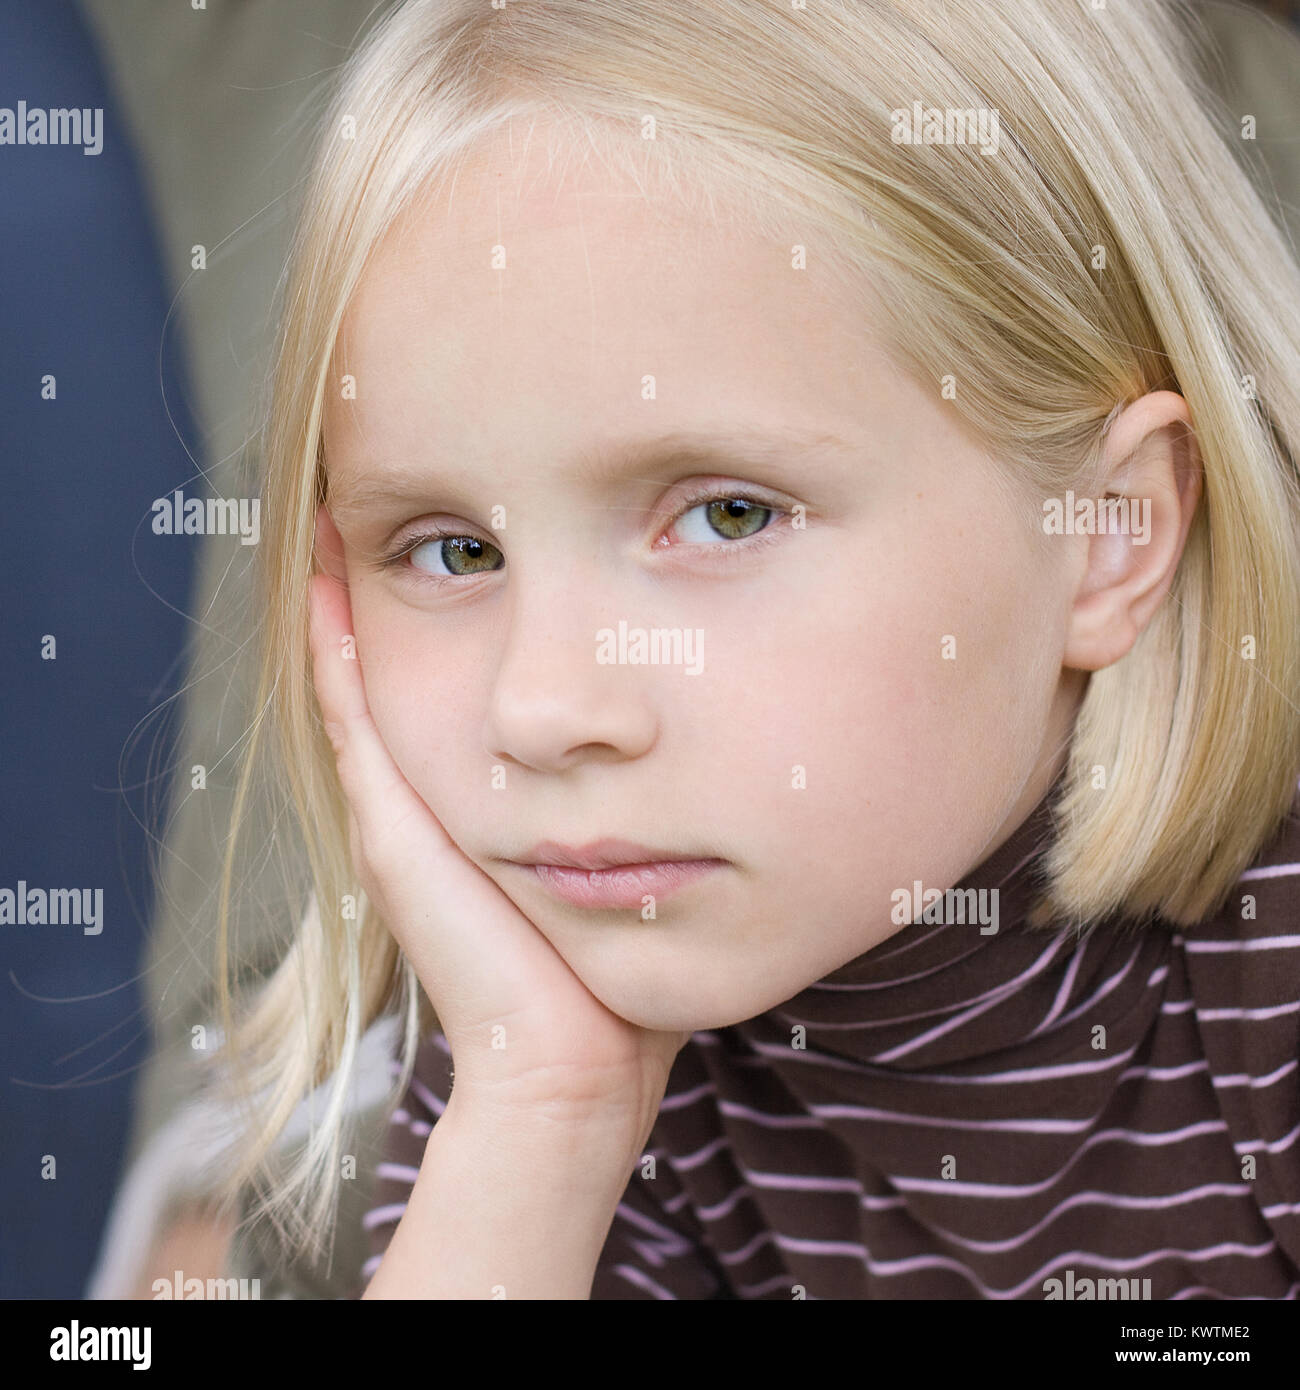 Sad teen girl - face close-up Stock Photo